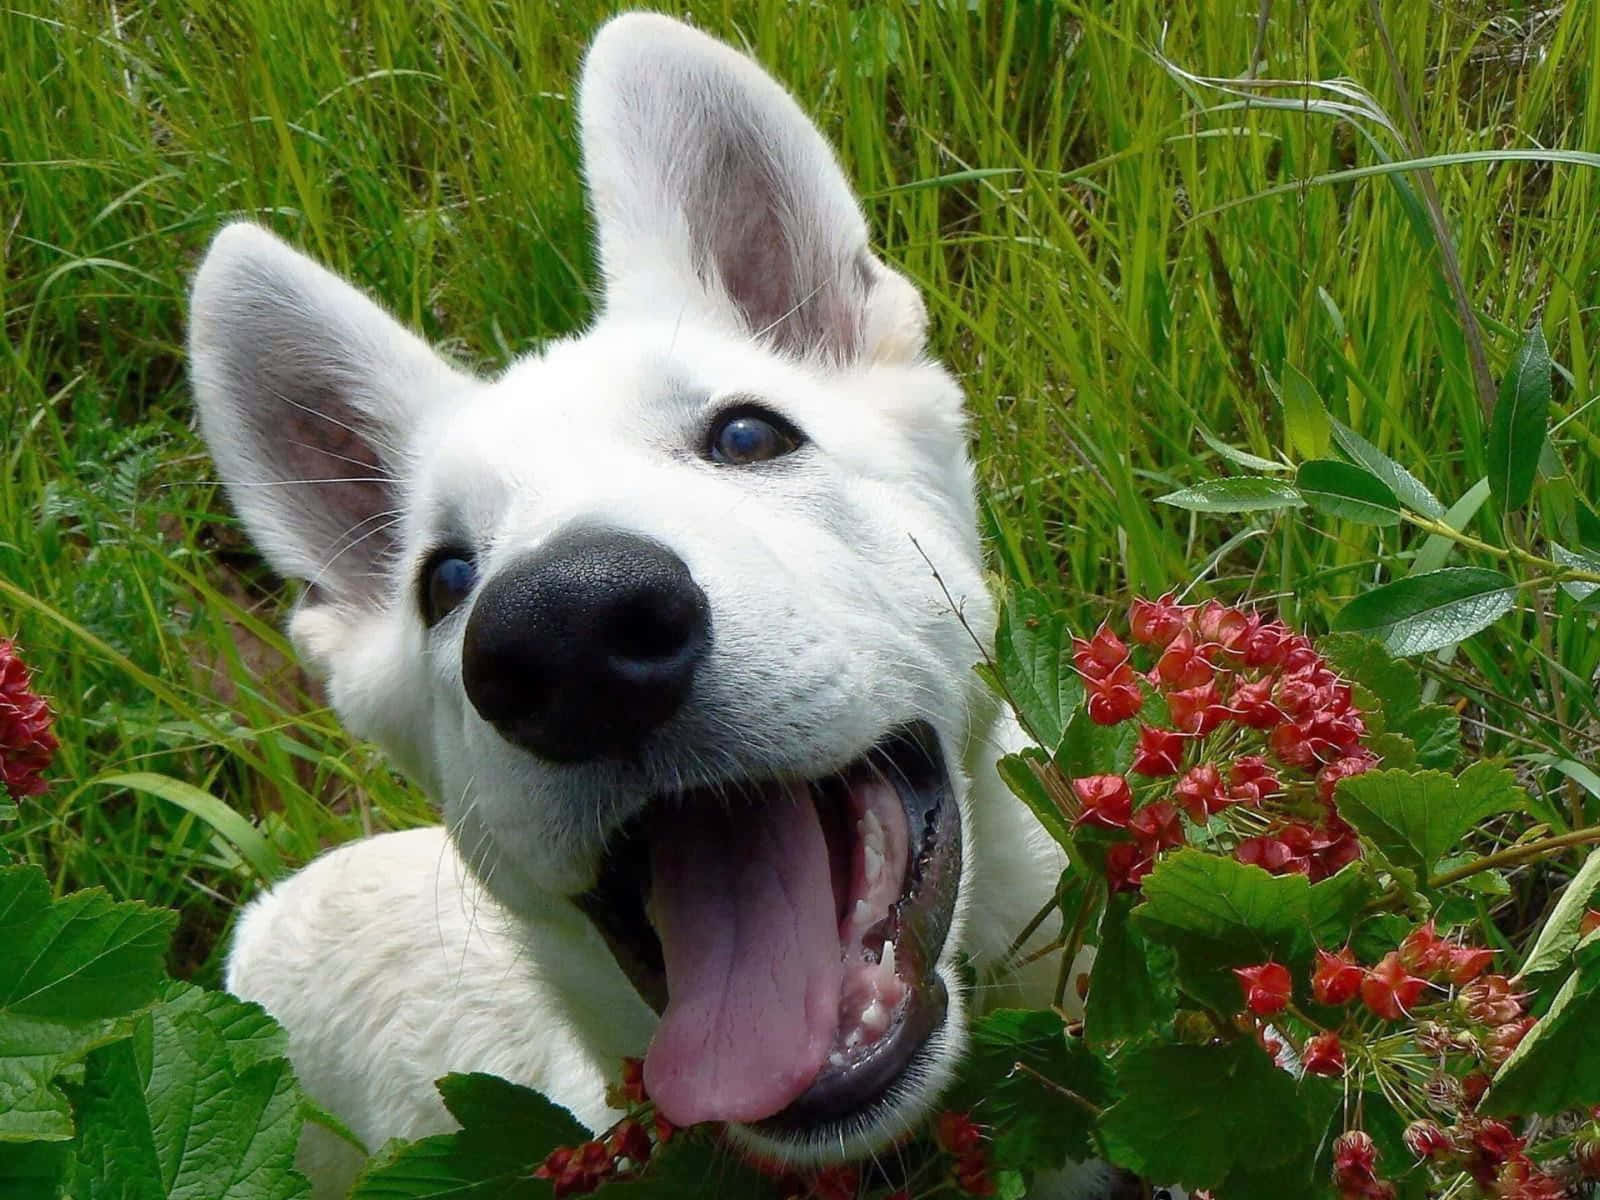 Lustigesbild Von Einem Hund Mit Herausgestreckter Zunge